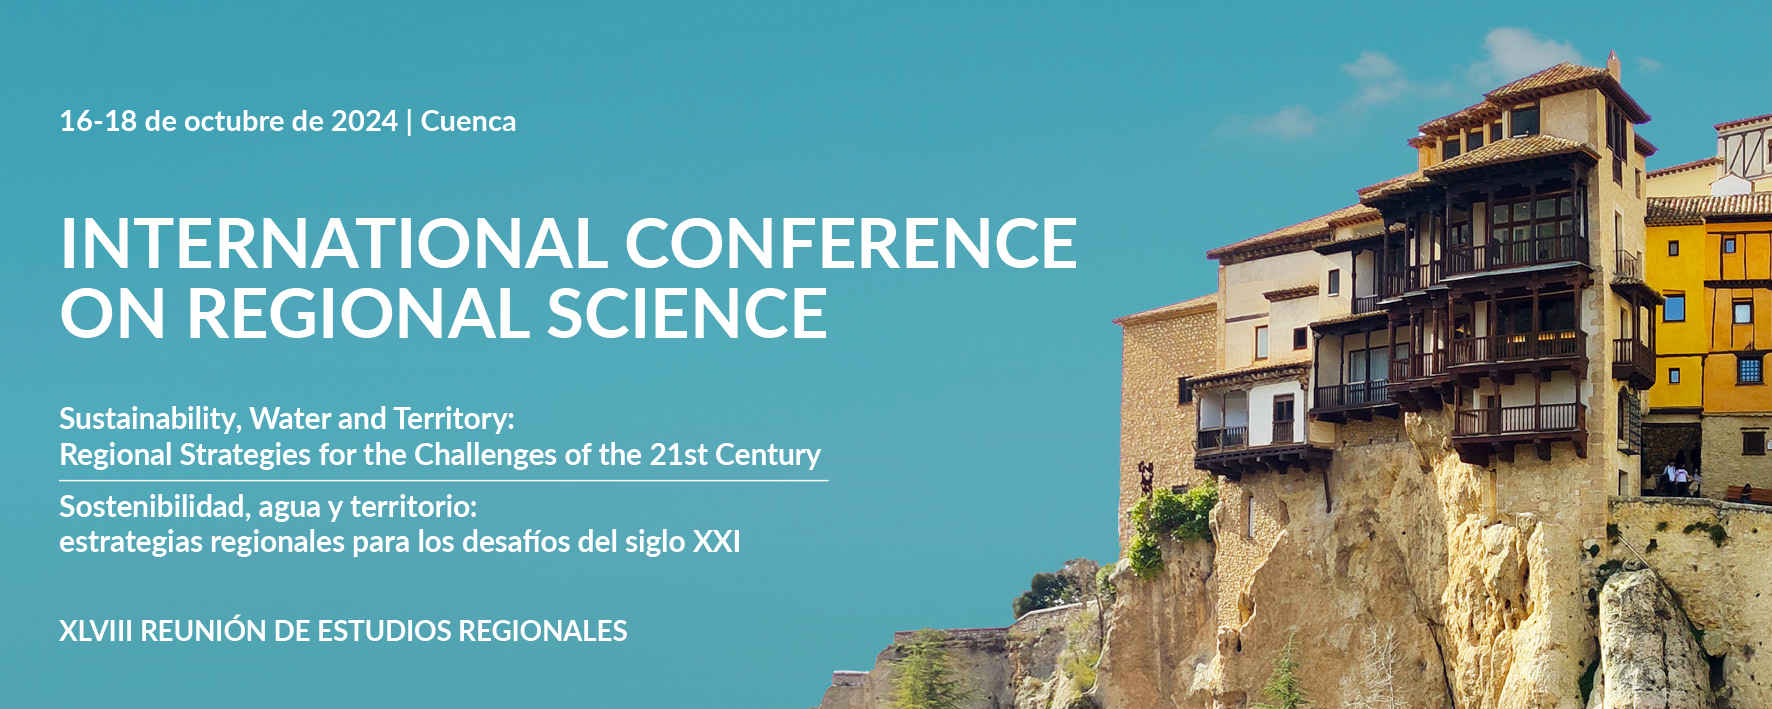 Ponentes invitadas a la XLVIII RER / Speakers invited to the XLVIII RER a la XLVIII Reunión de Estudios Regionales – Cuenca, 16-18 de octubre de 2024